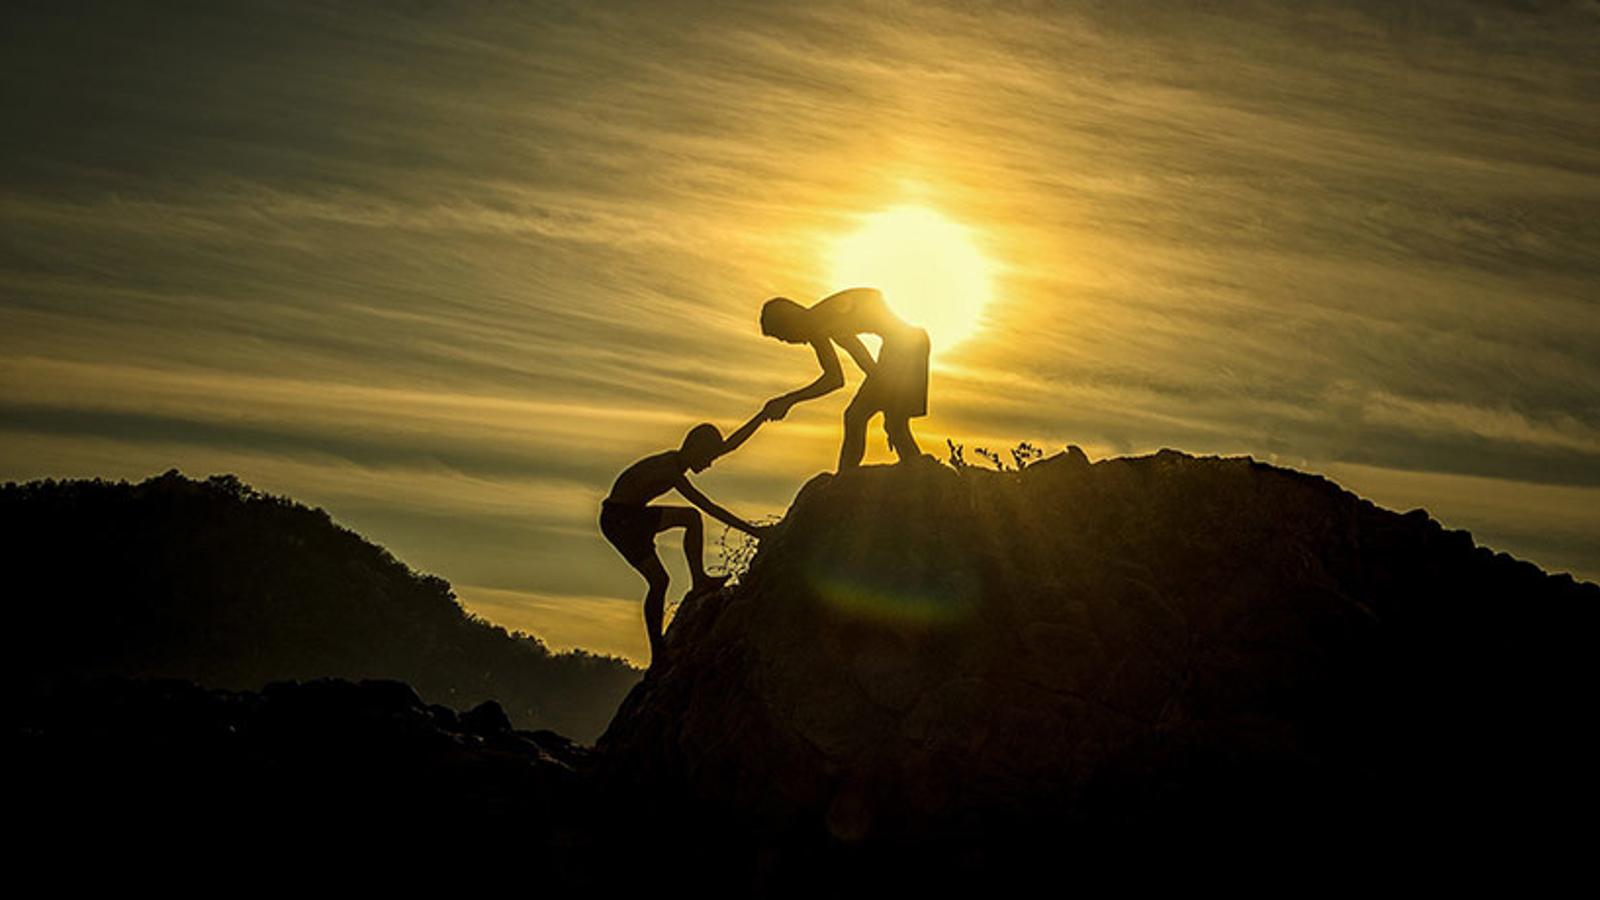 En person som får hjälp upp för ett berg av en annan person, och med en solnedgång i bakgrunden.